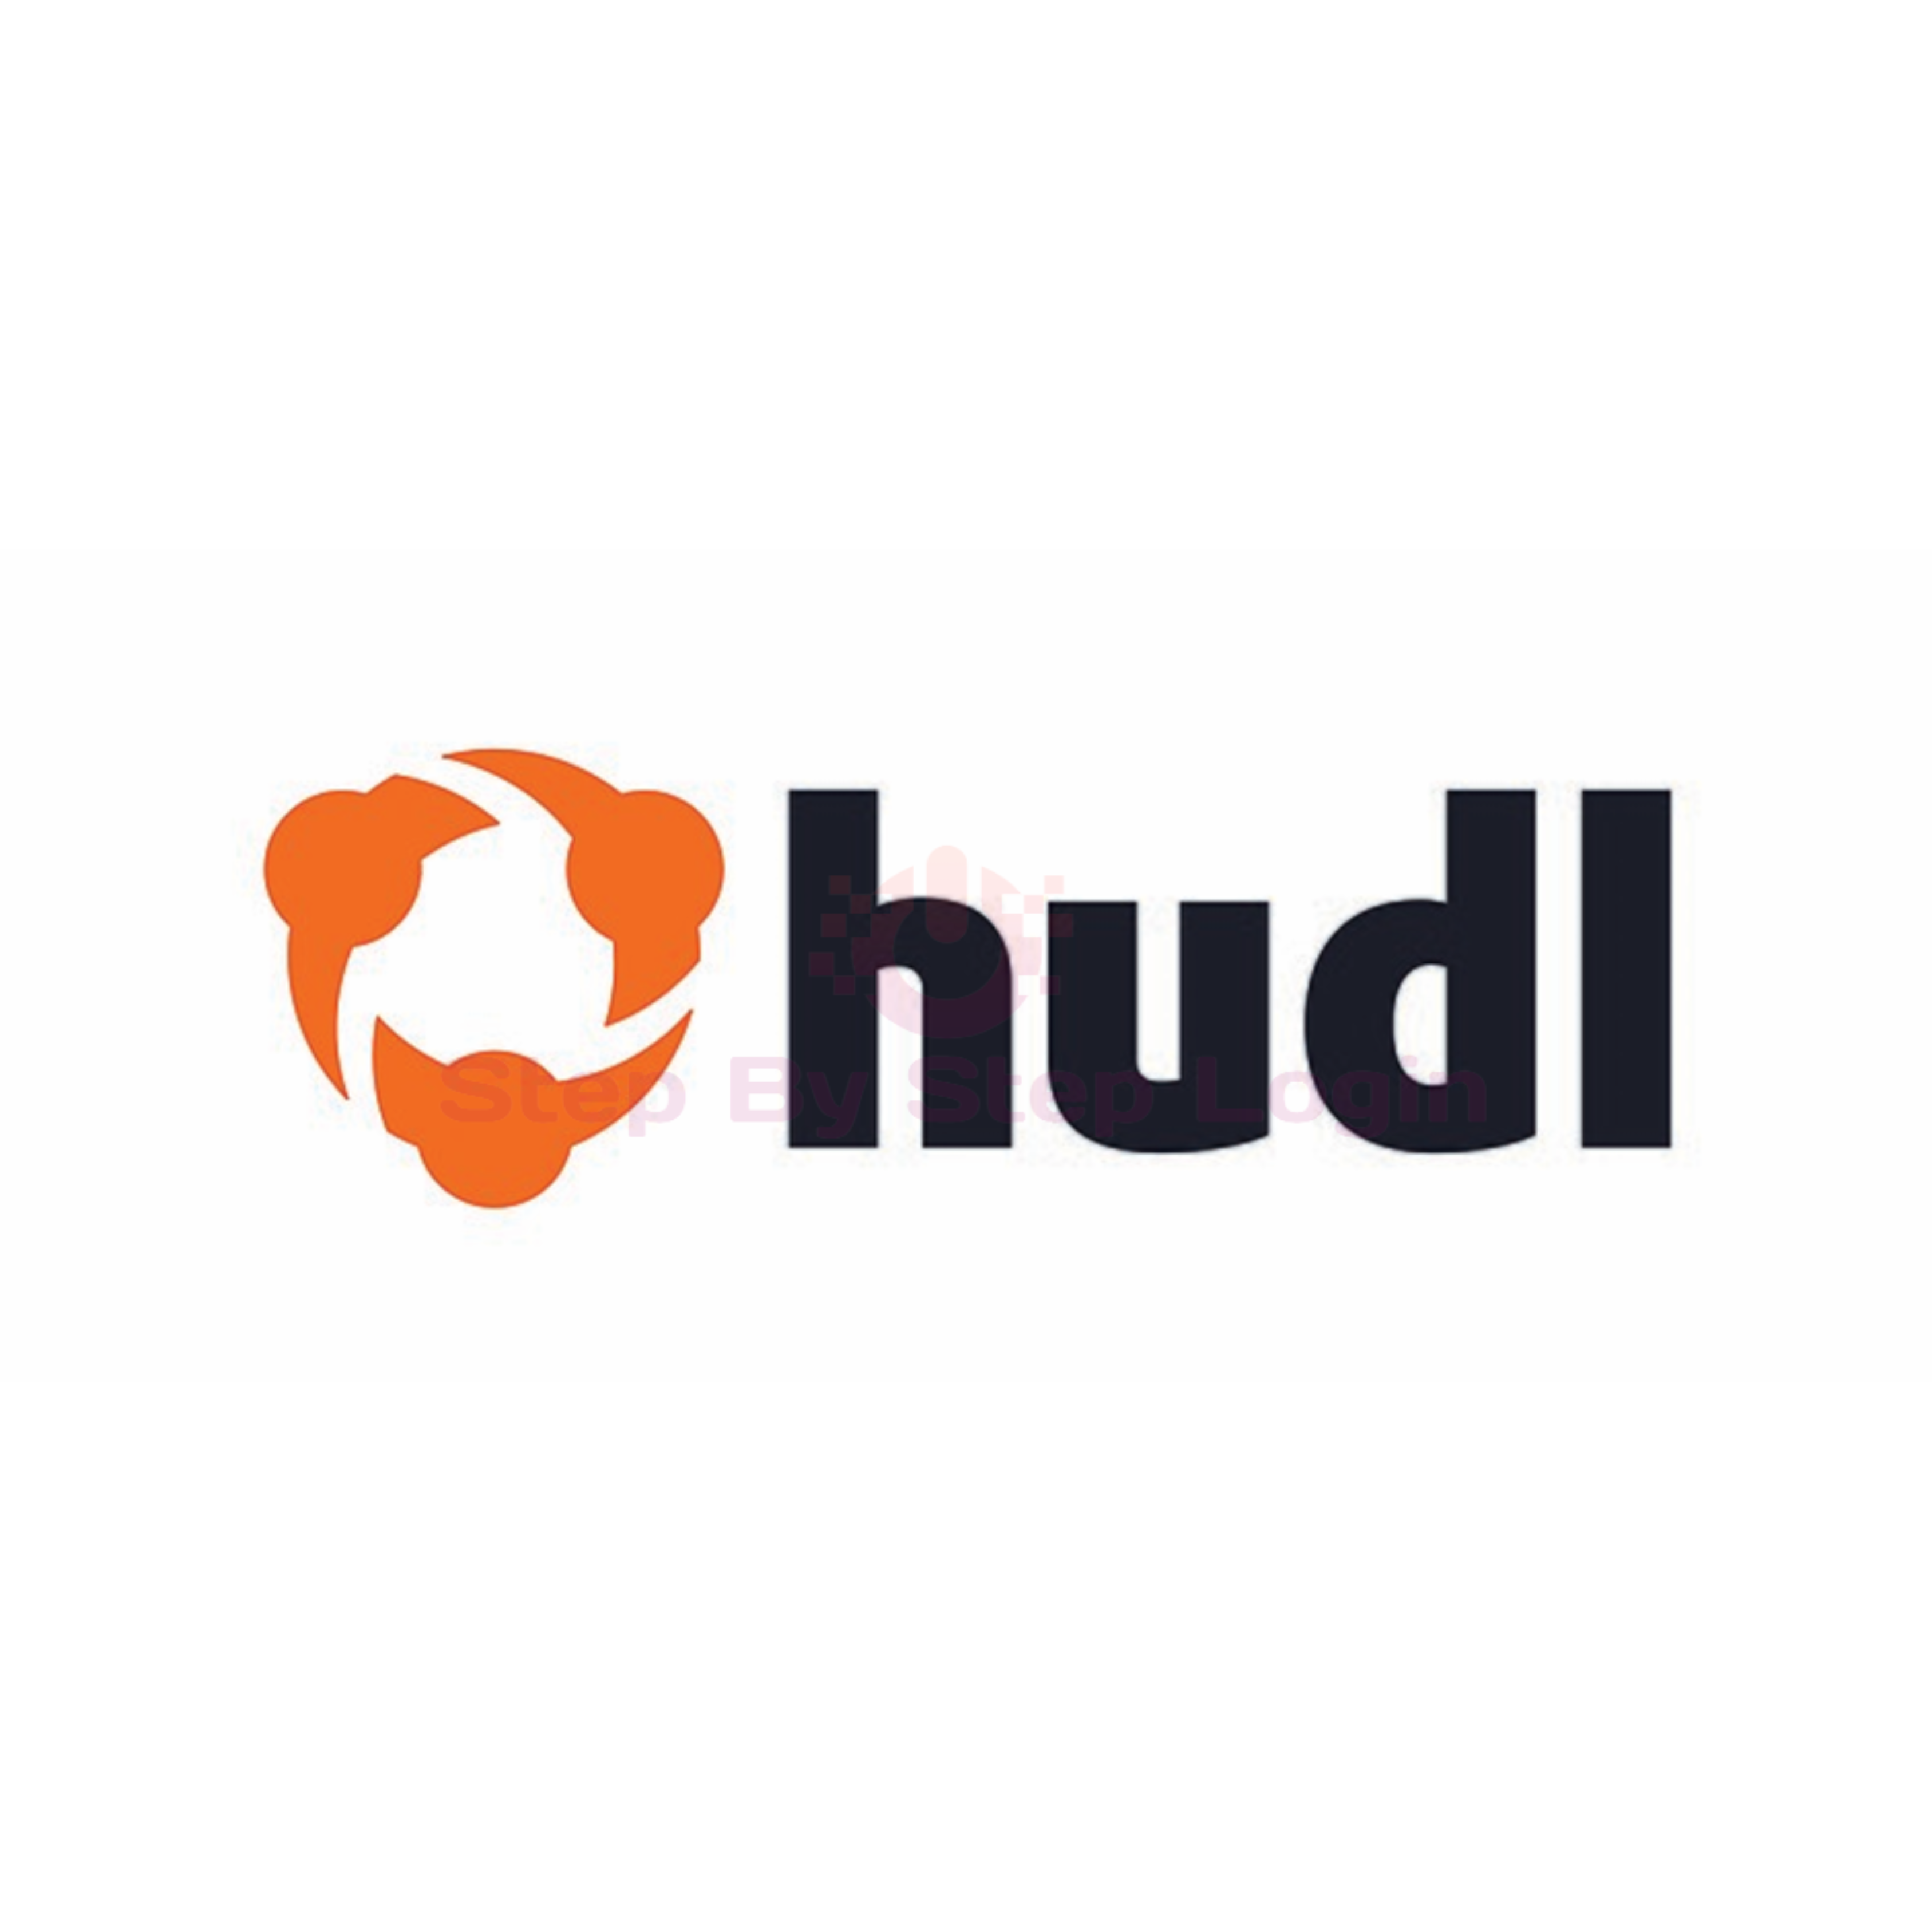 HUDL logo